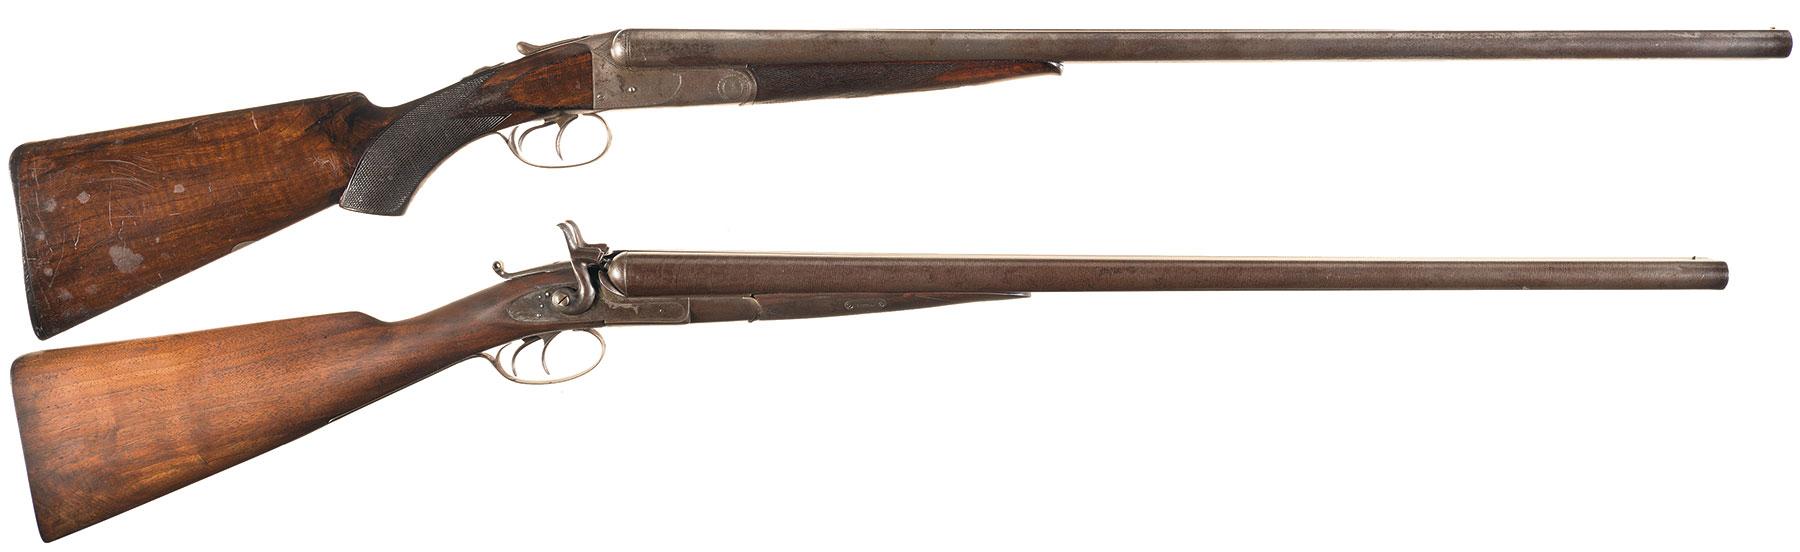 Two Antique Double Barrel Shotguns